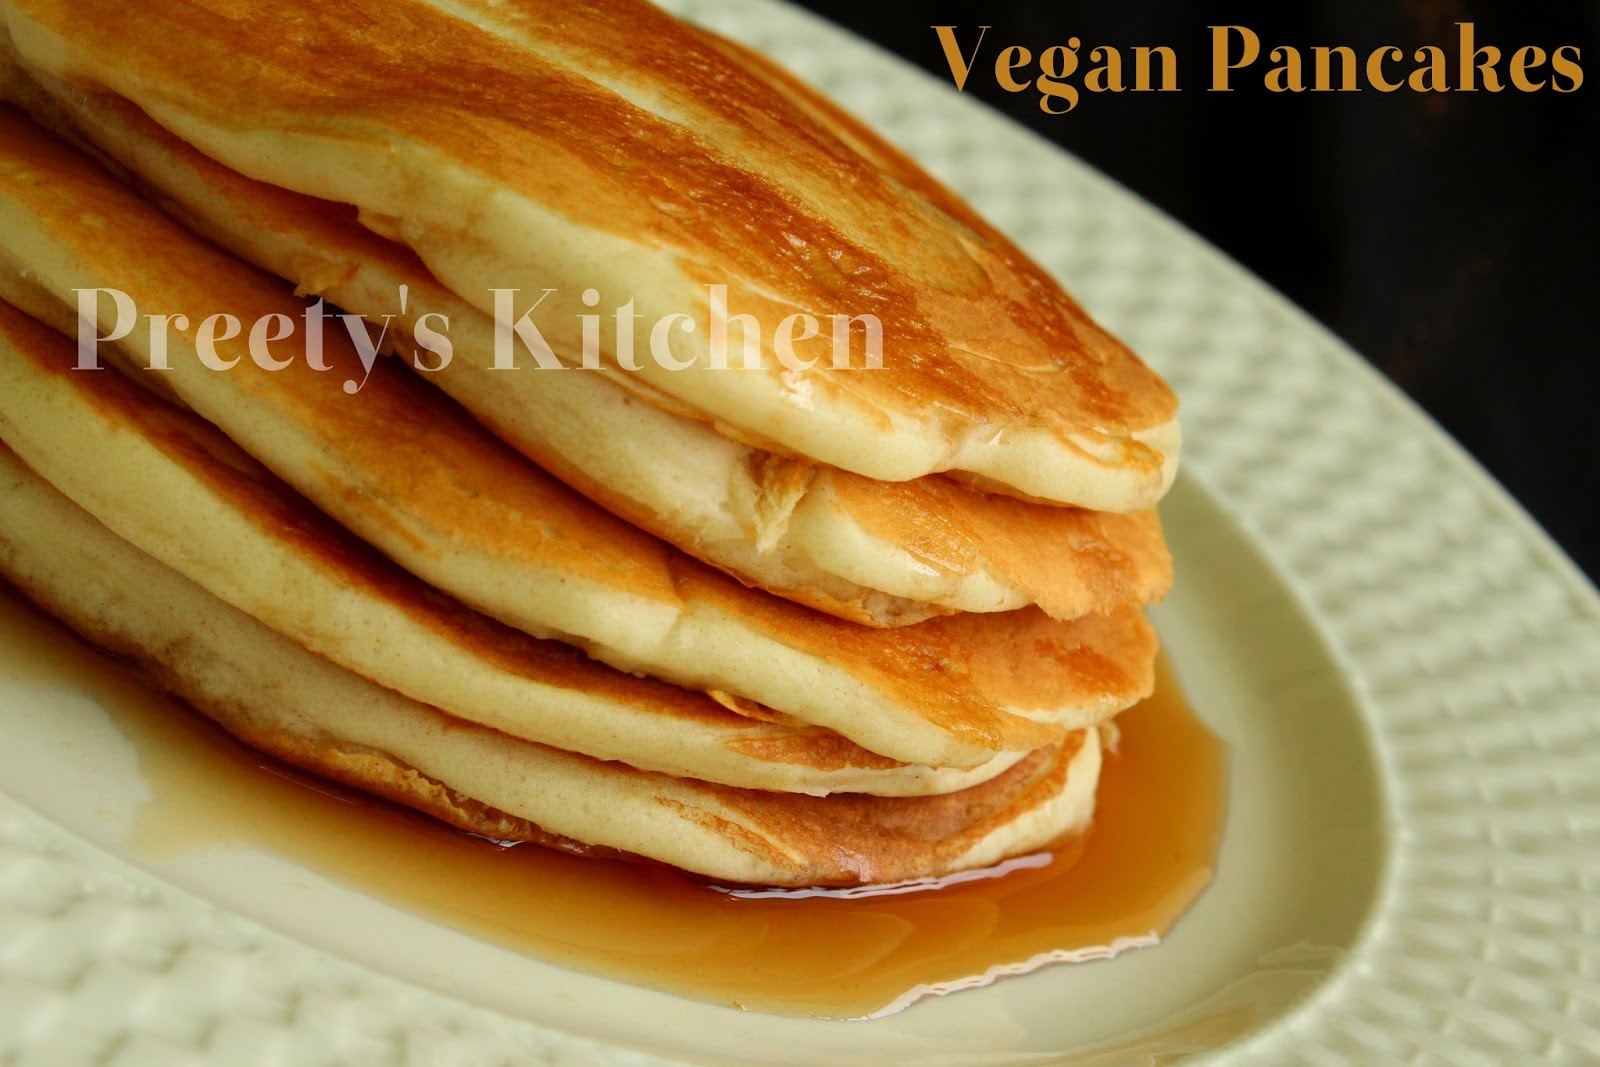 Eggless to how Pancakes Vegan Kitchen: / pancakes eggless make  Pancakes Preety's